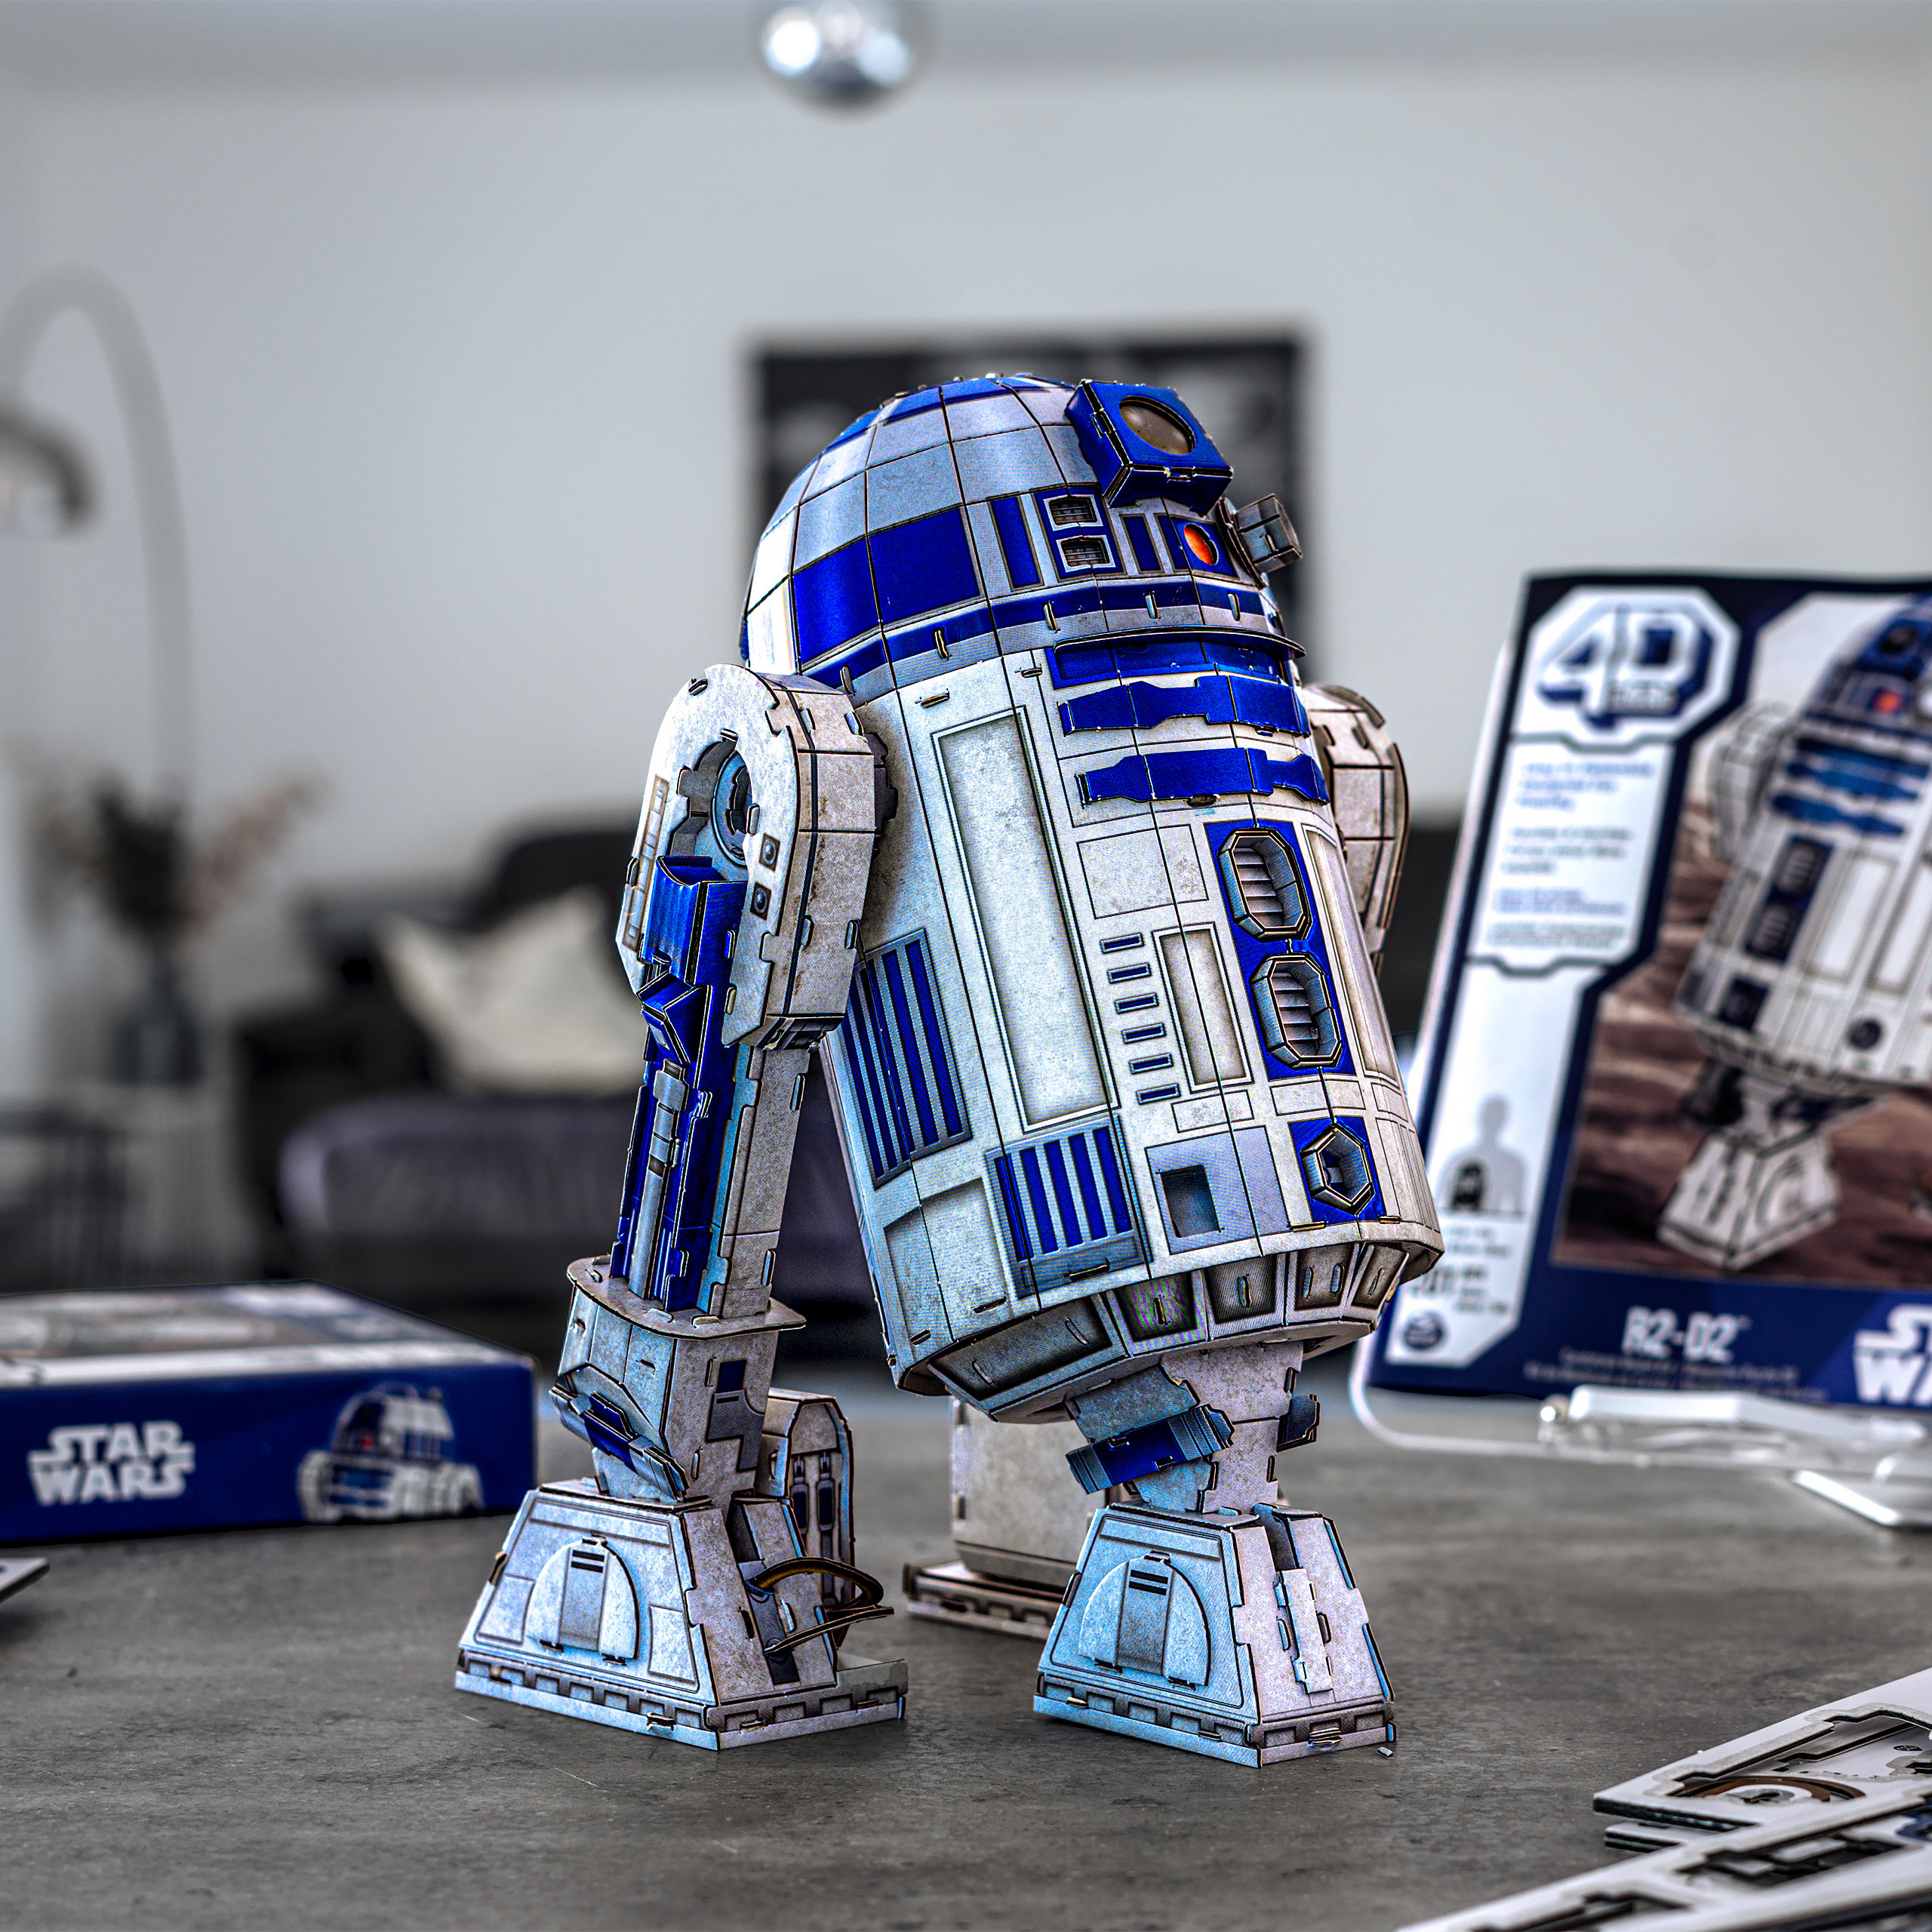 4D Build : R2-D2